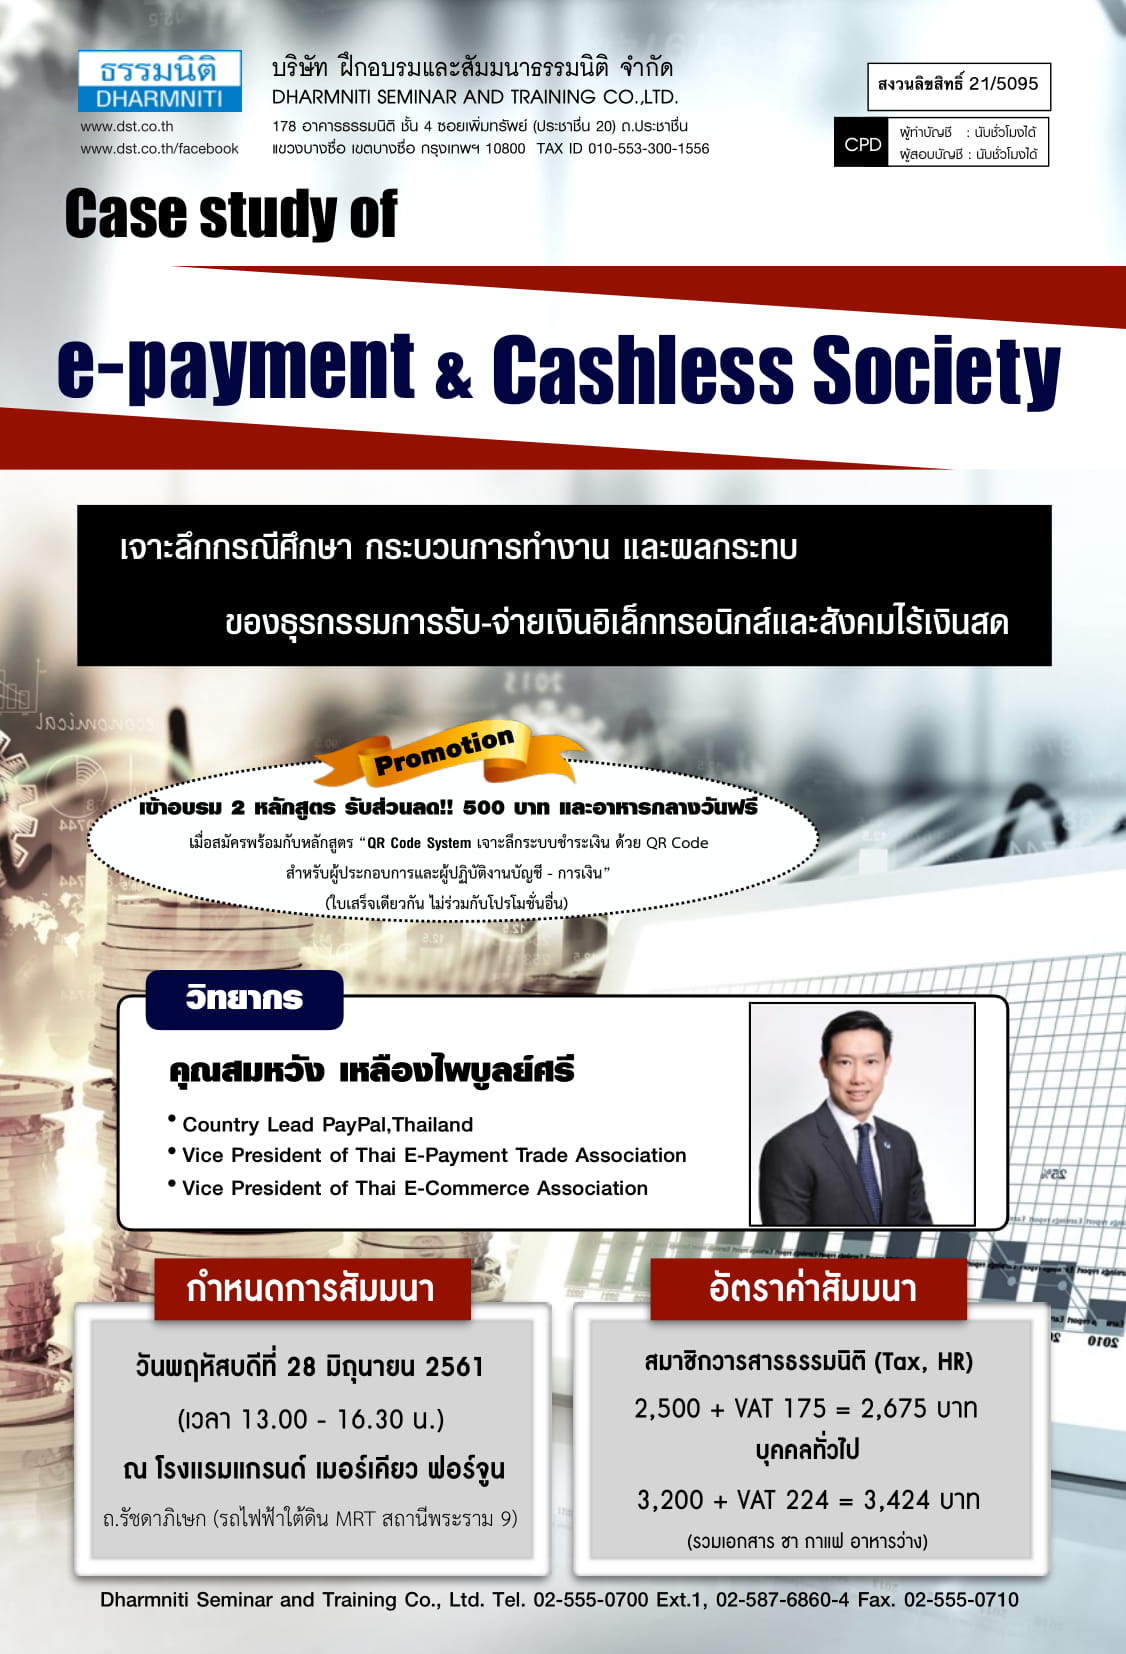 Case study of e-payment & Cashless Society (เจาะลึกกรณีศึกษา กระบวนการทำงาน และผลกระทบของธุรกรรมการรับ-จ่ายเงินอิเล็กทรอนิกส์ และสังคมไร้เงินสด) (หลักสูตรใหม่ 2561)